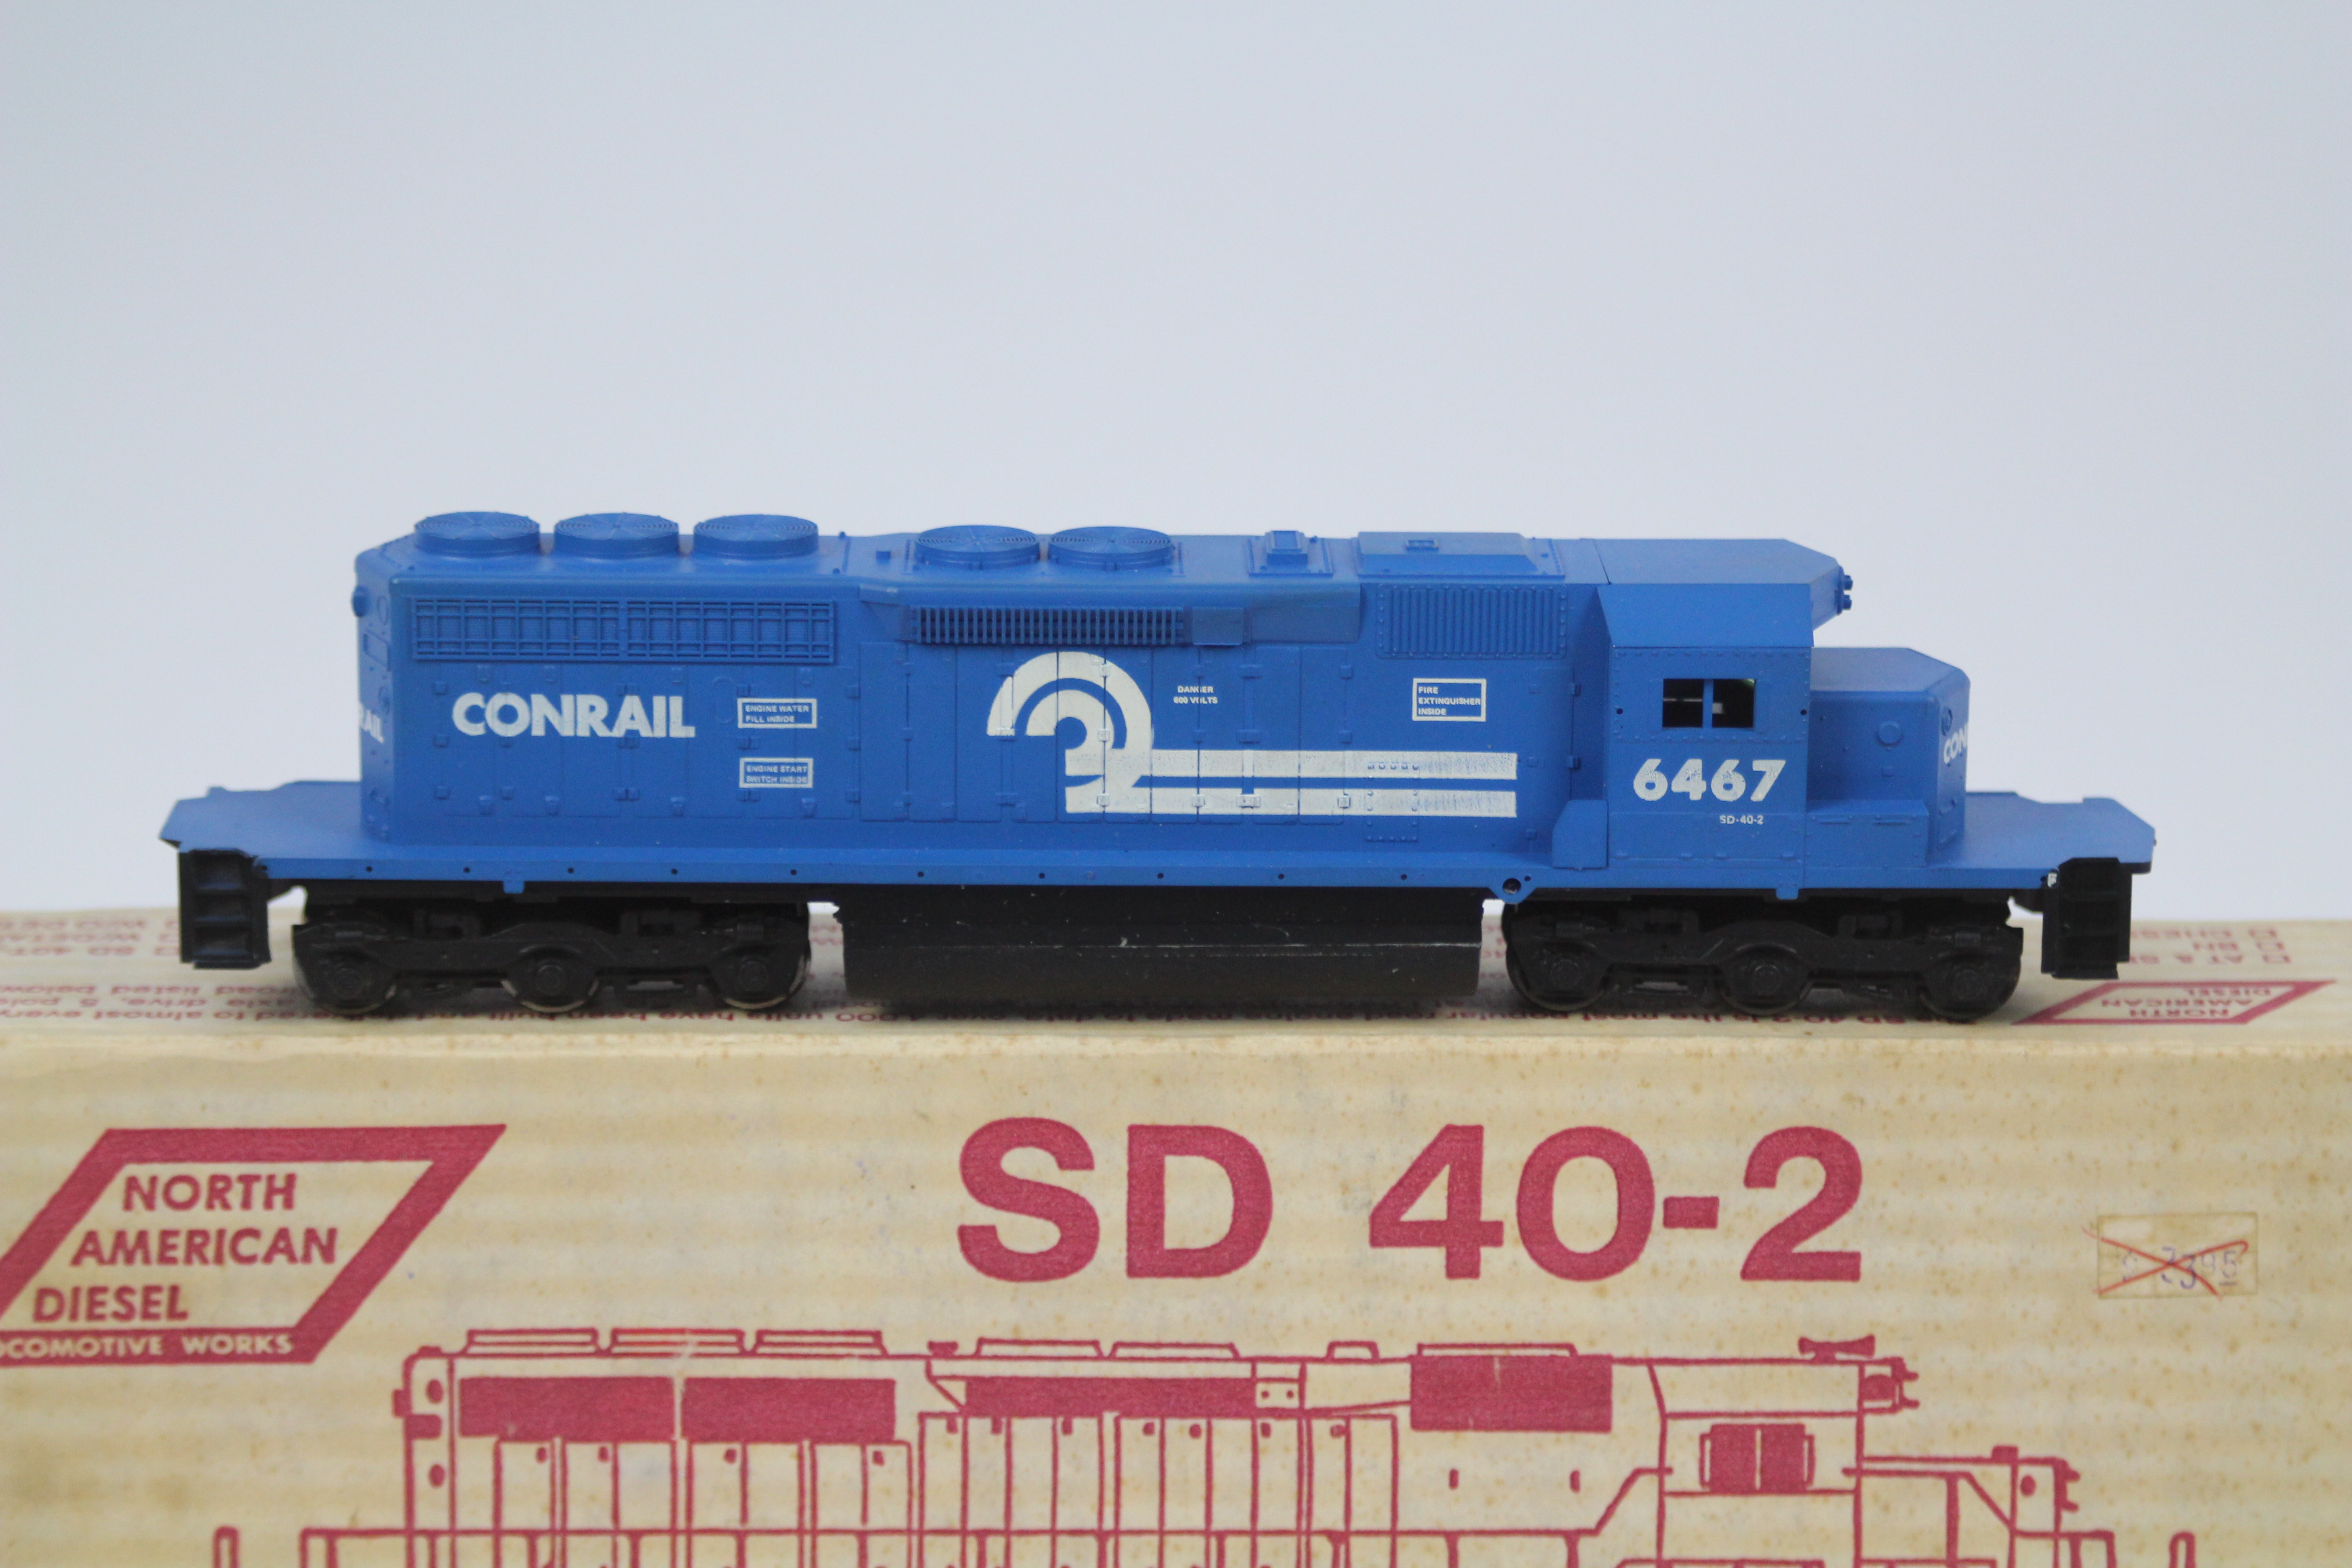 North American Diesel - A boxed North American Diesel Locomotive Works HO Gauge SD40-2. - Image 2 of 2